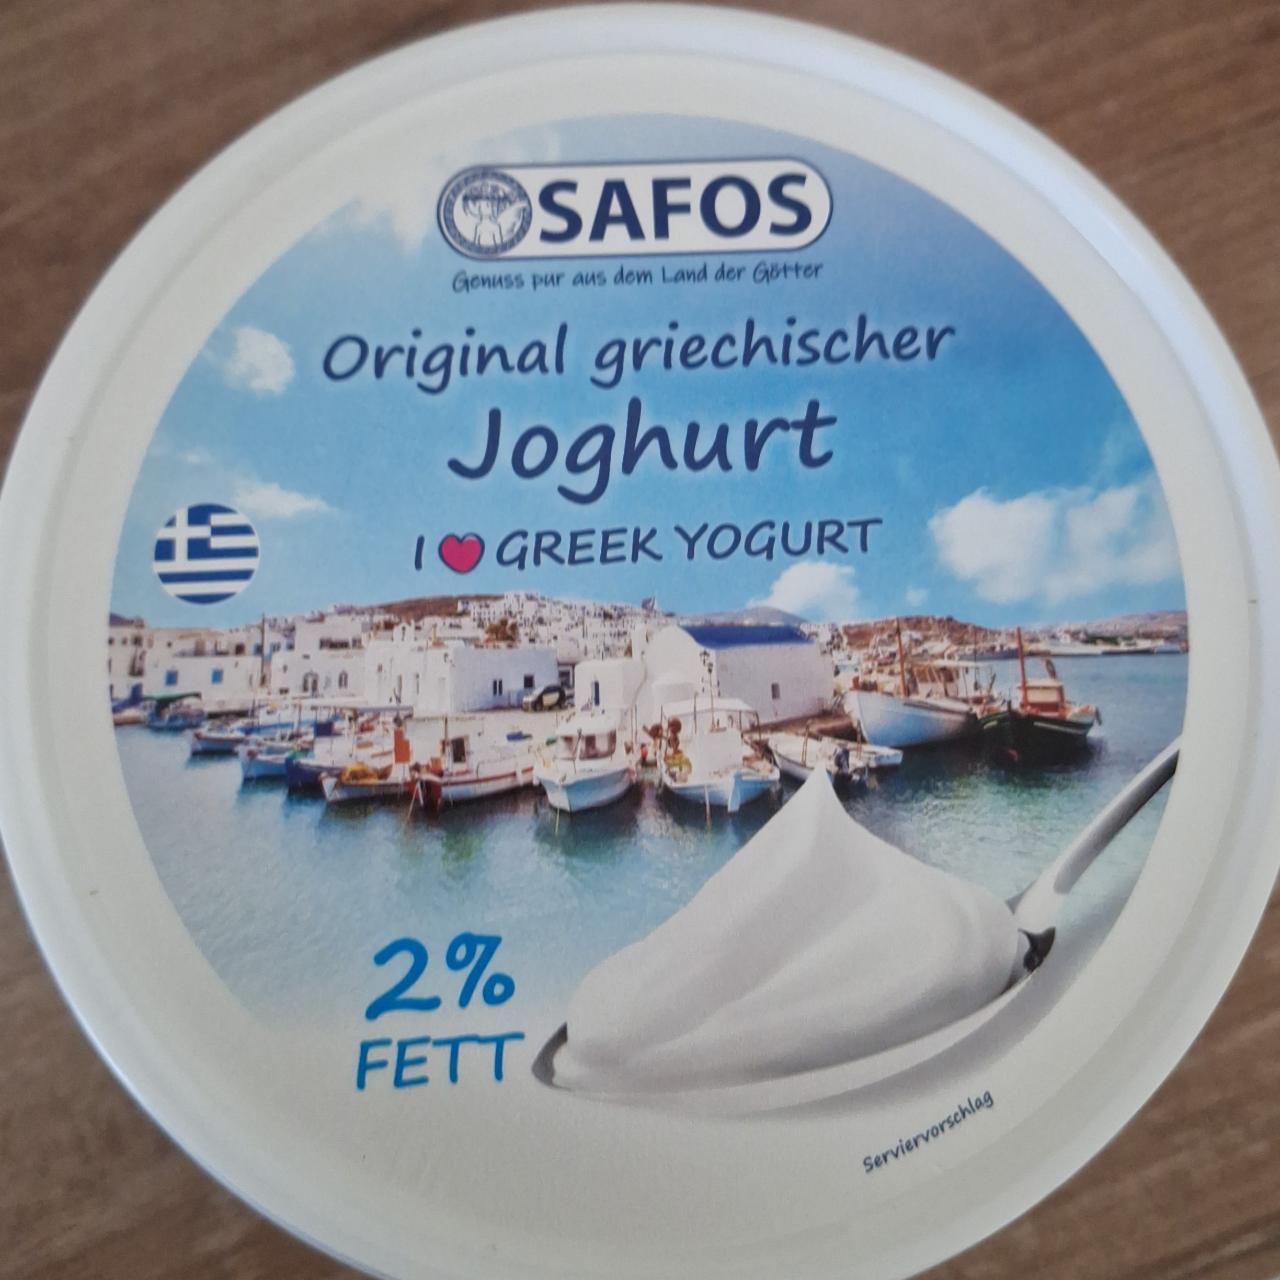 Fotografie - Original griechischer Joghurt 2% fett Safos